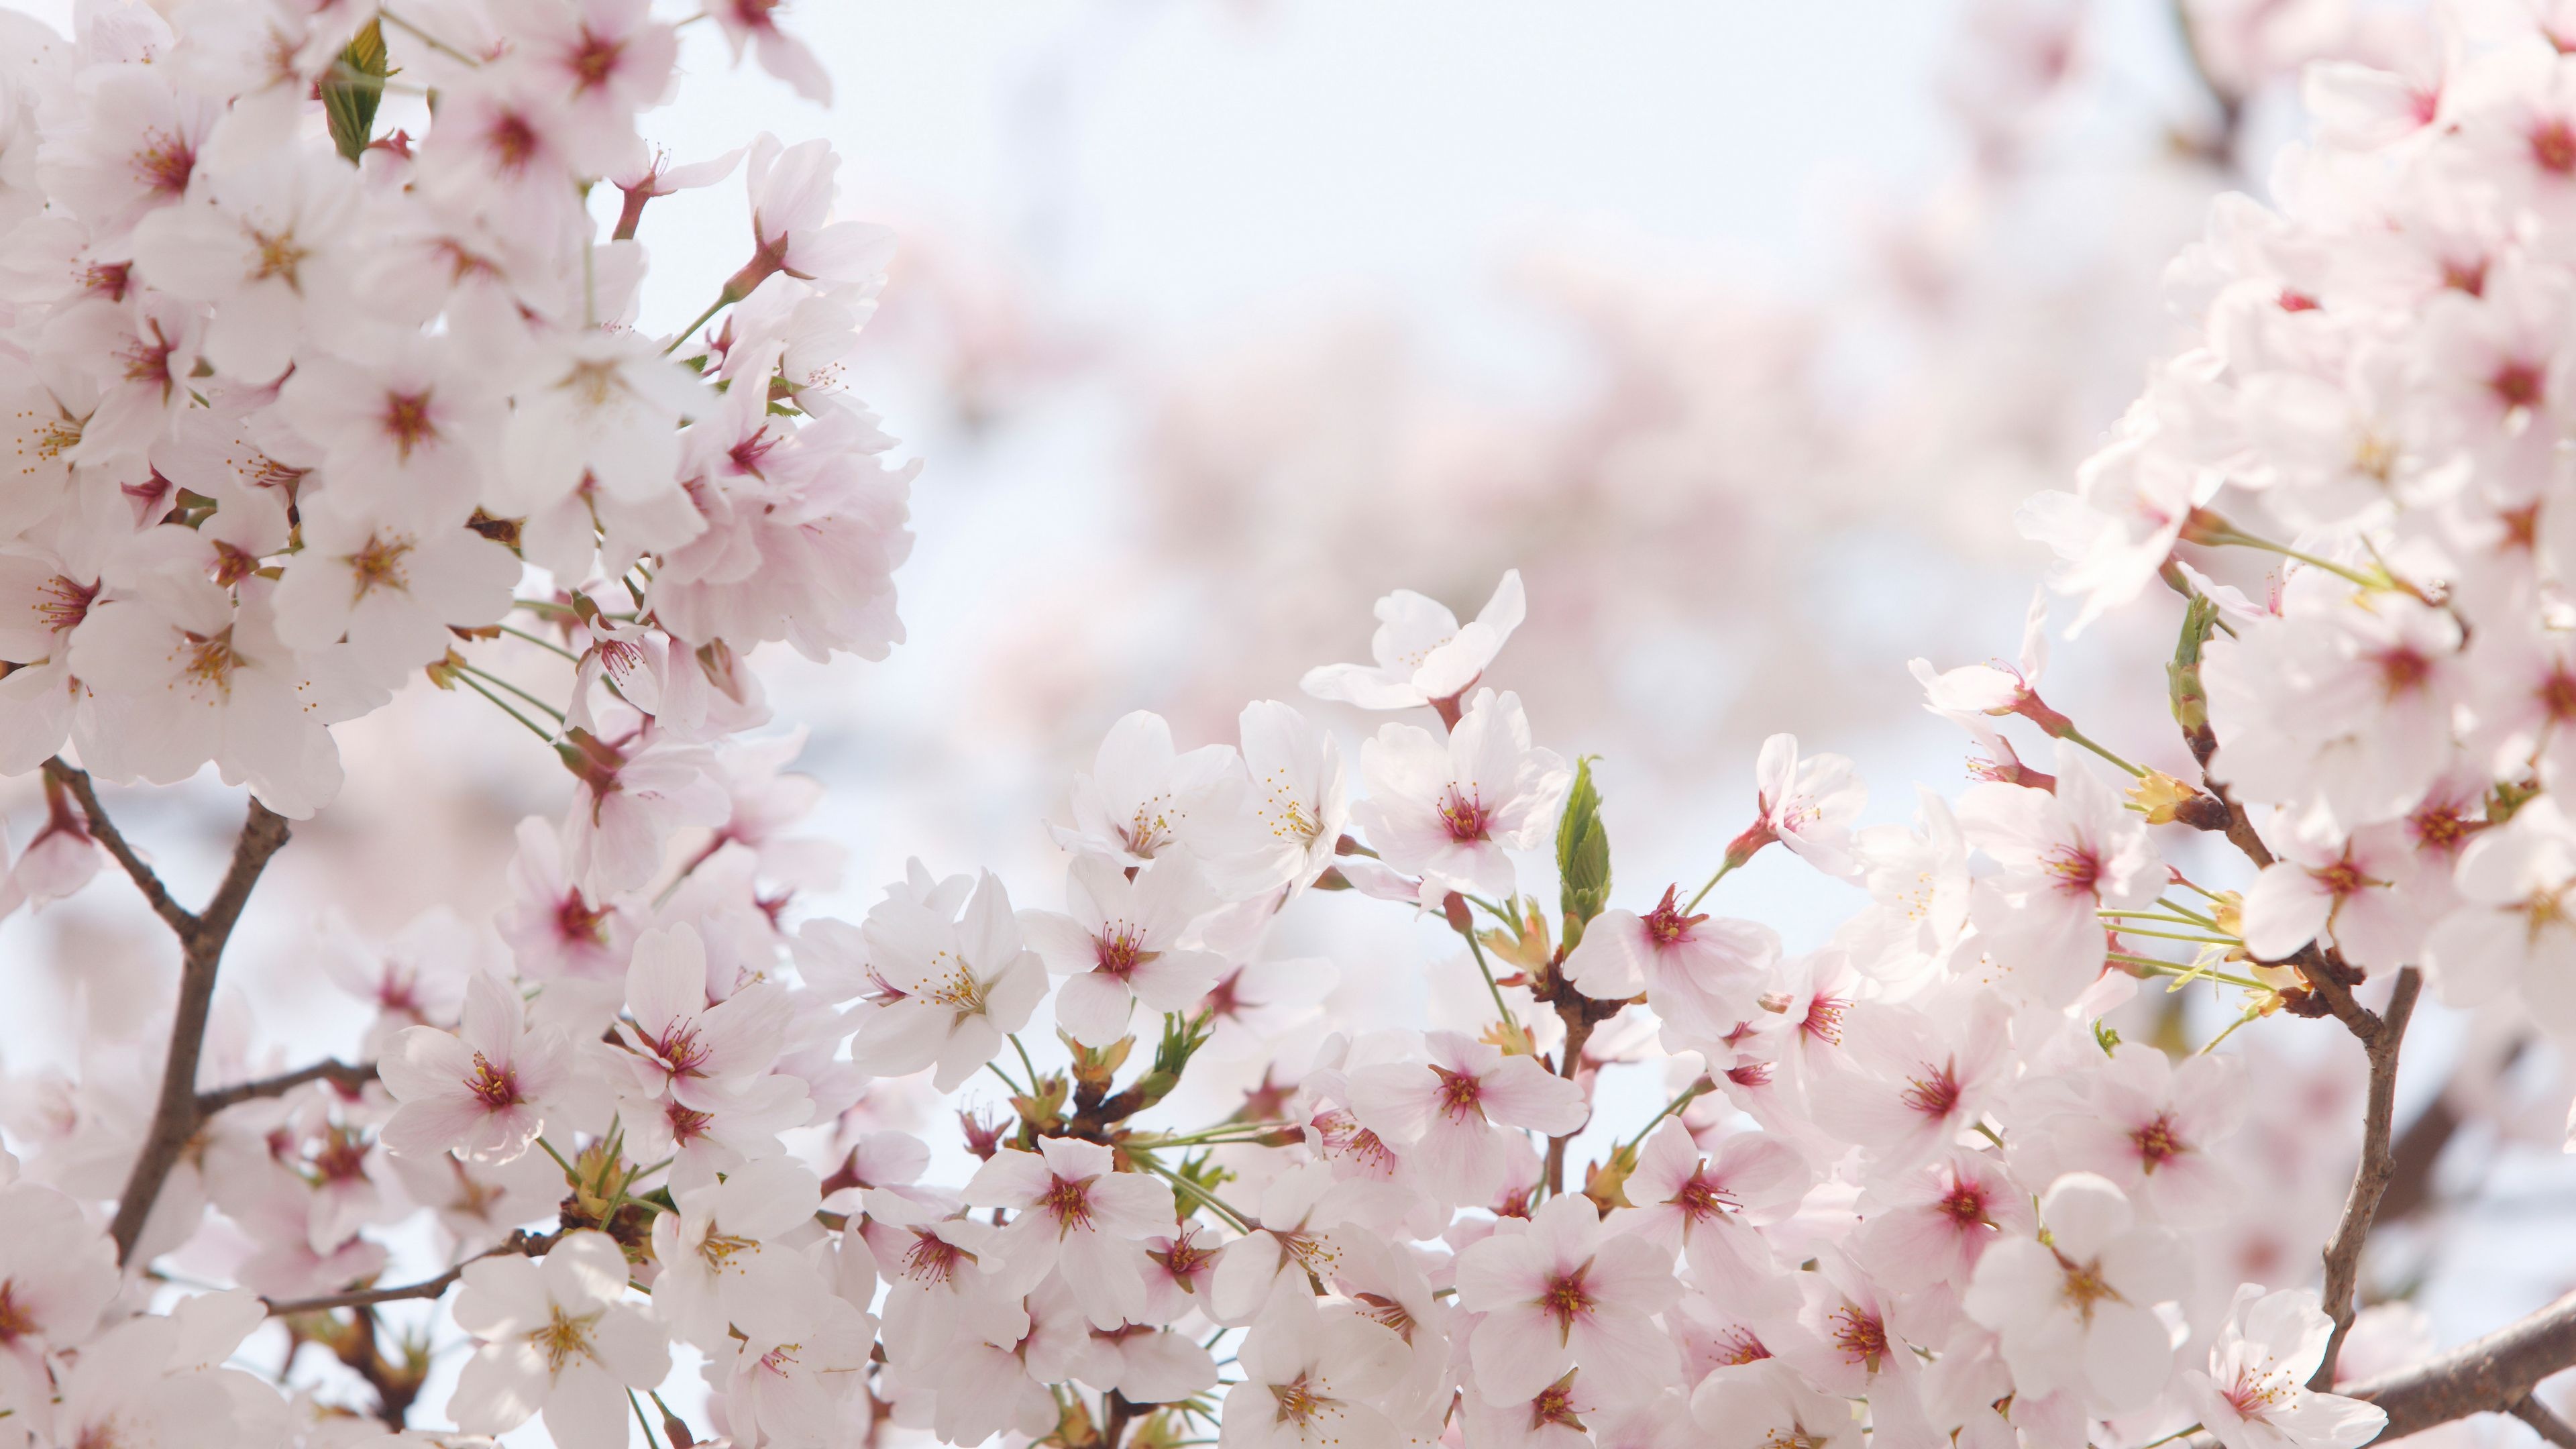 4k高清樱花唯美写真,每当微风吹过,烂漫花瓣随风飘落像仙境一般!